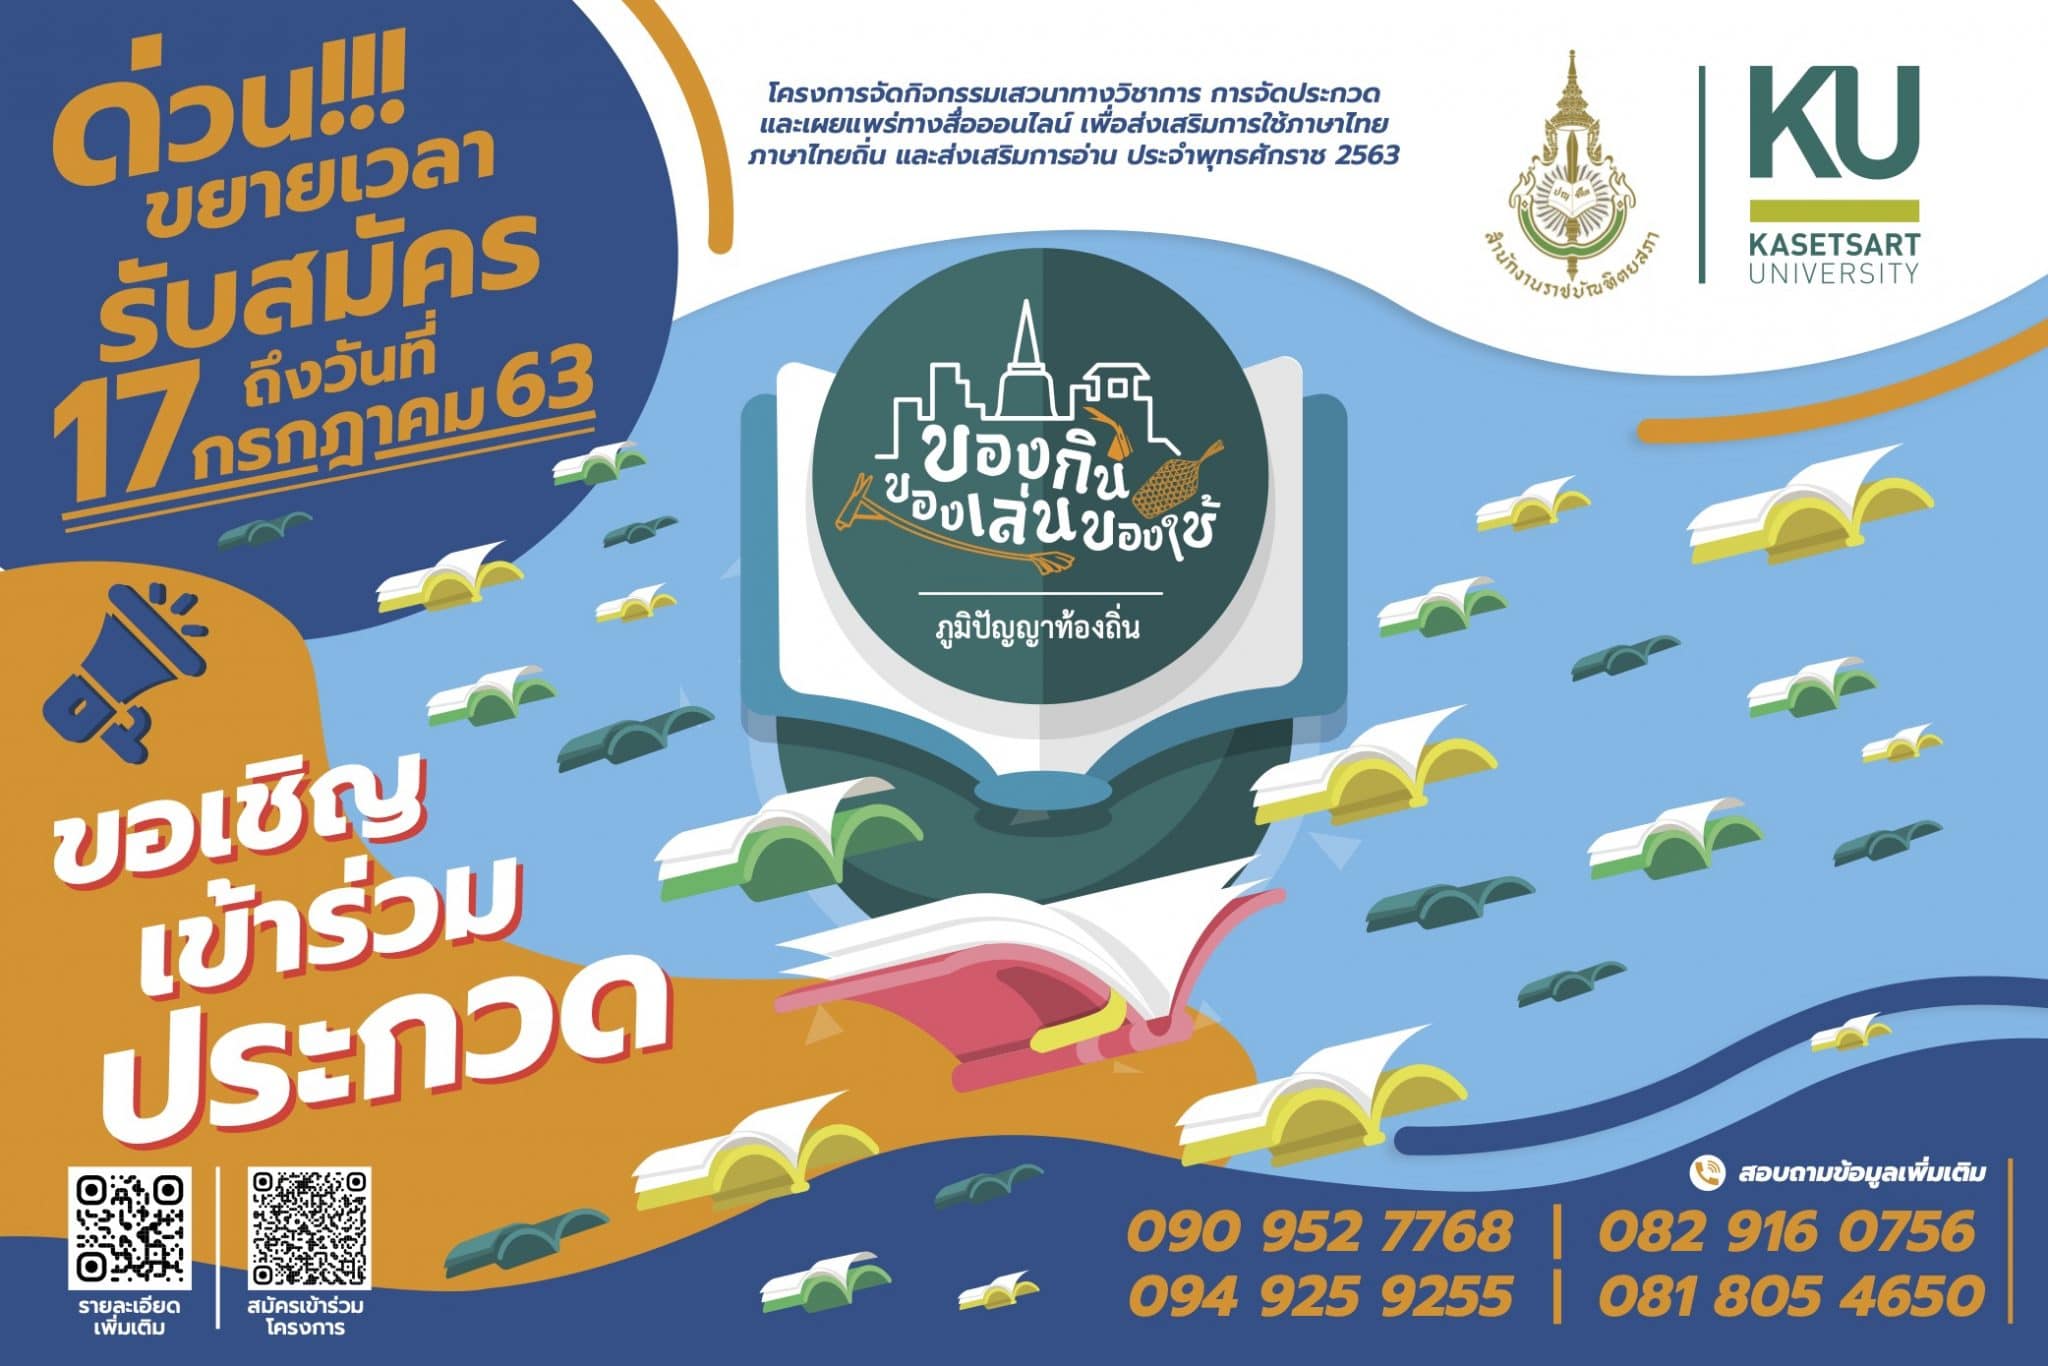 ขอเชิญเข้าร่วมประกวดการใช้ภาษาไทยและภาษาถิ่นในการเล่าเรื่องได้อย่างถูกต้อง ภายใต้หัวข้อ “ภูมิปัญญาท้องถิ่น : ของกิน ของเล่น ของใช้”